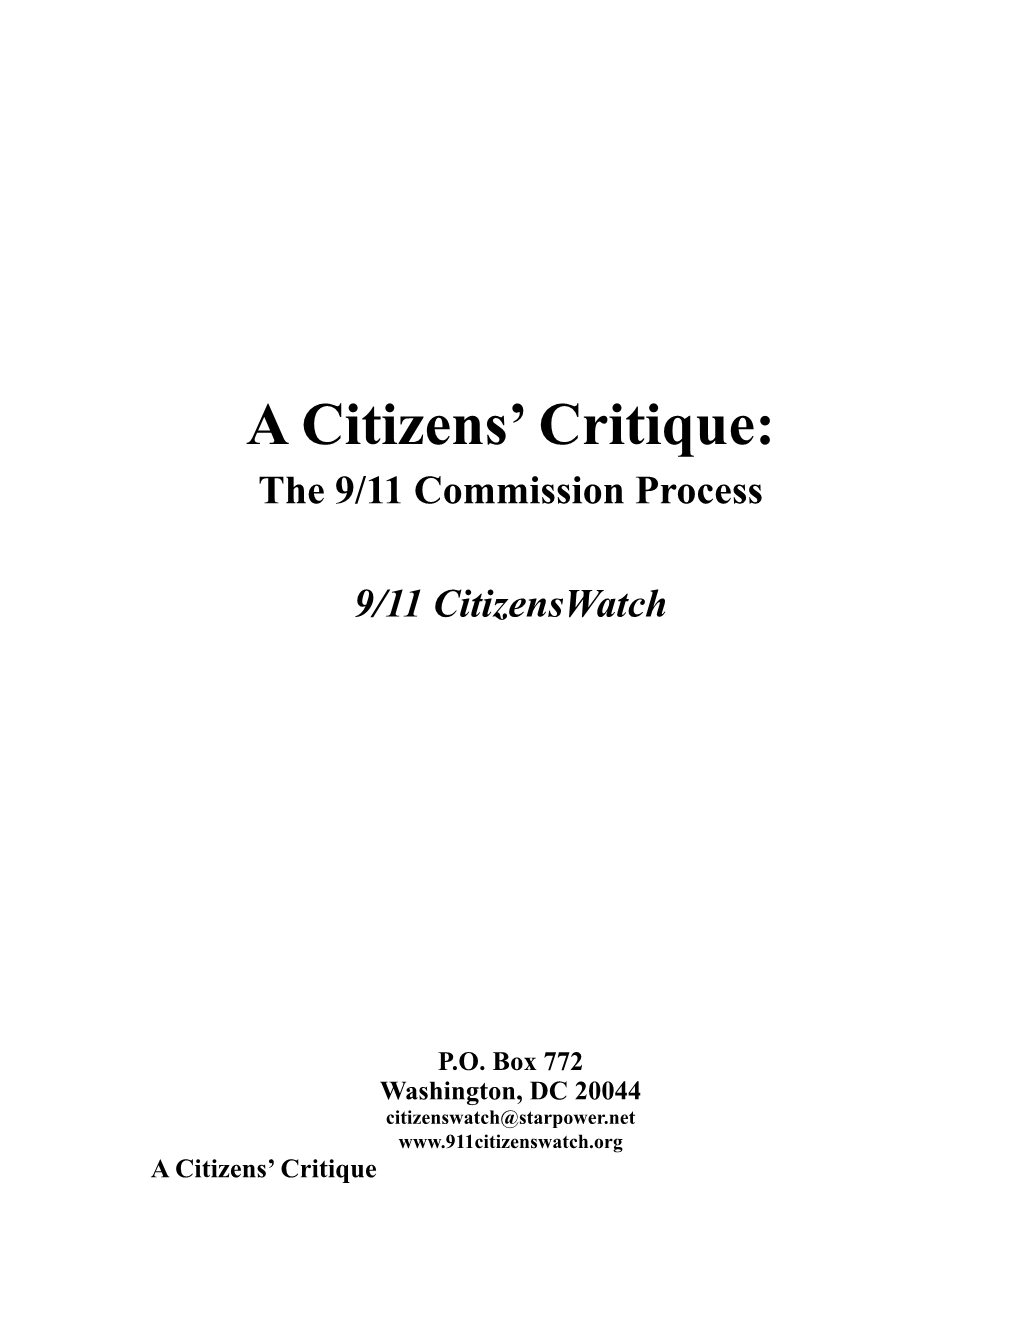 A Citizens' Critique: the 9/11 Commission Process